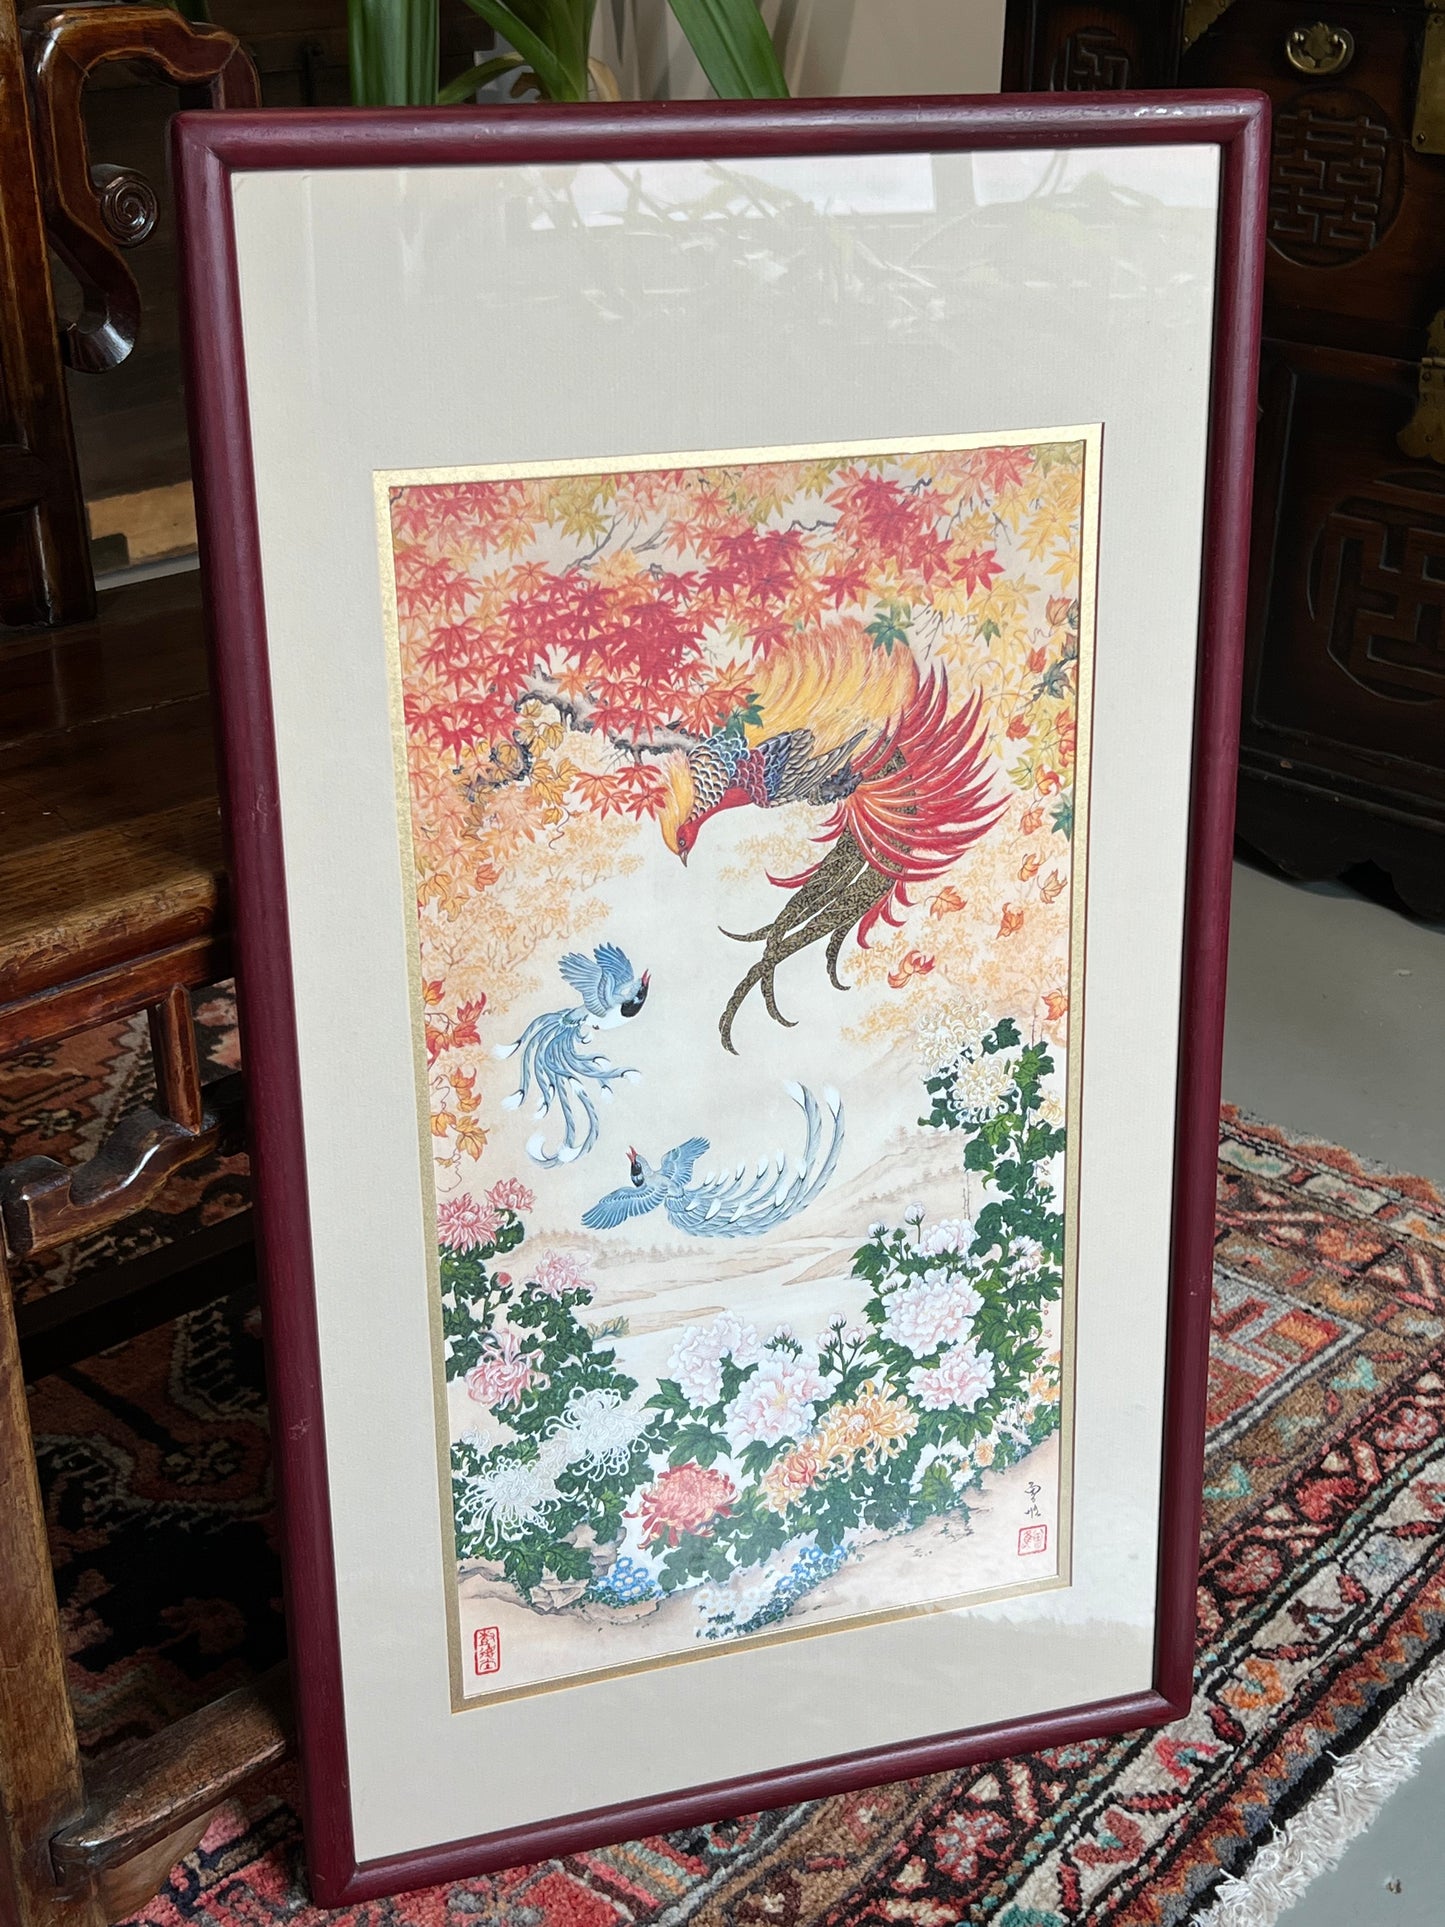 Wei Tseng Yang Framed Print "The Dance of Autumn" 17"x30"